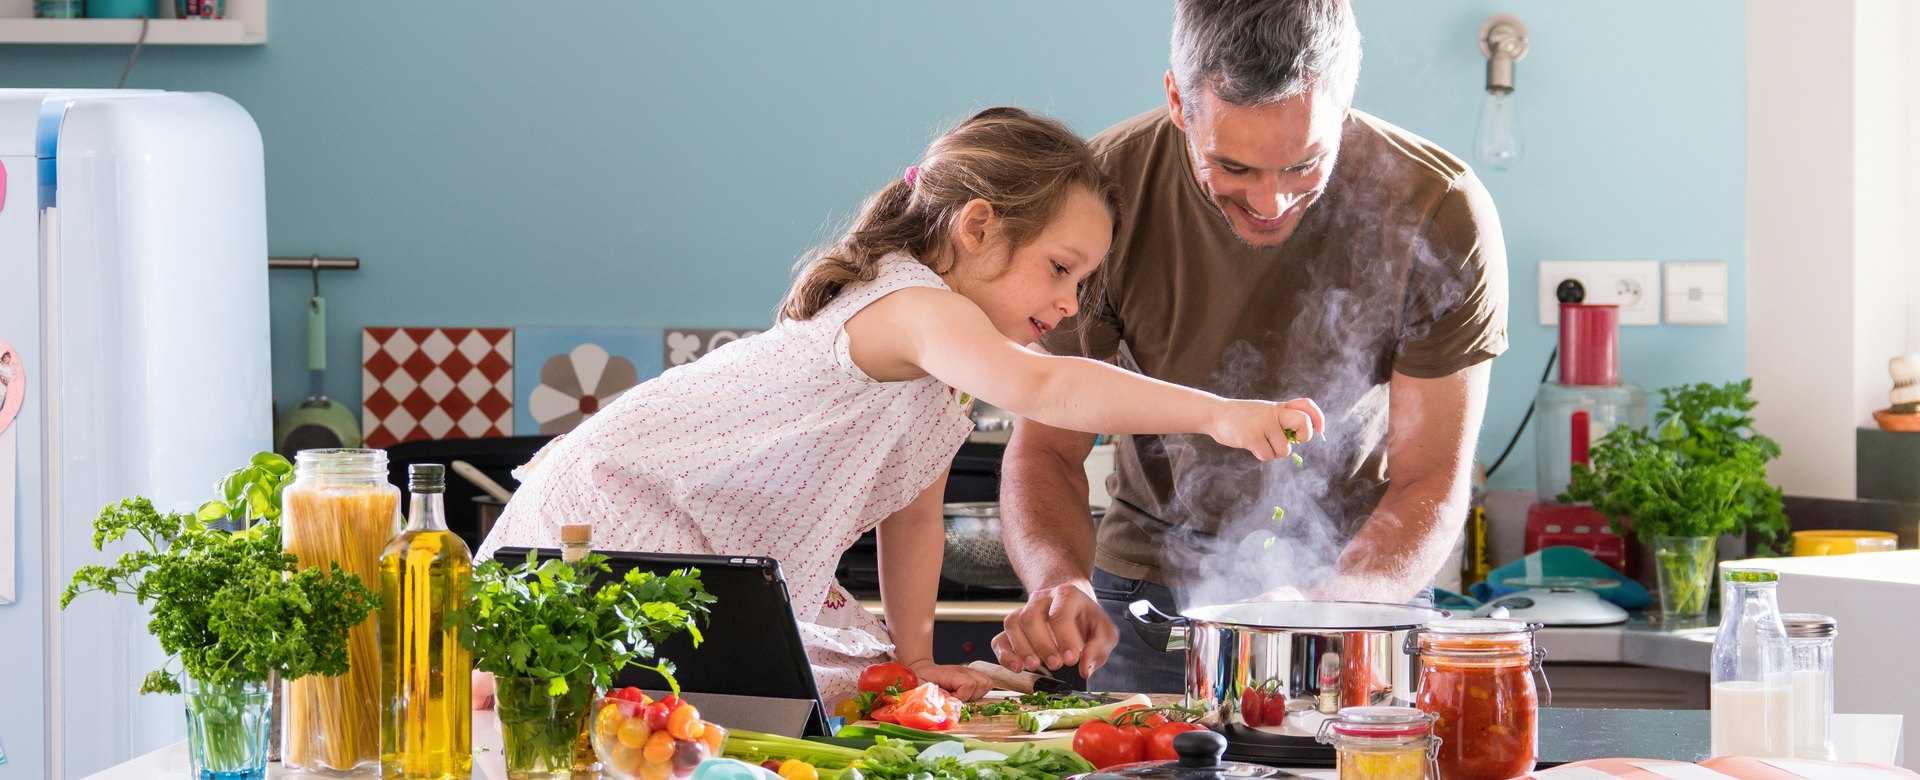 Vater und Tochter kochen gemeinsam ein Gericht mit Nudeln, Olivenöl und Tomatensugo.